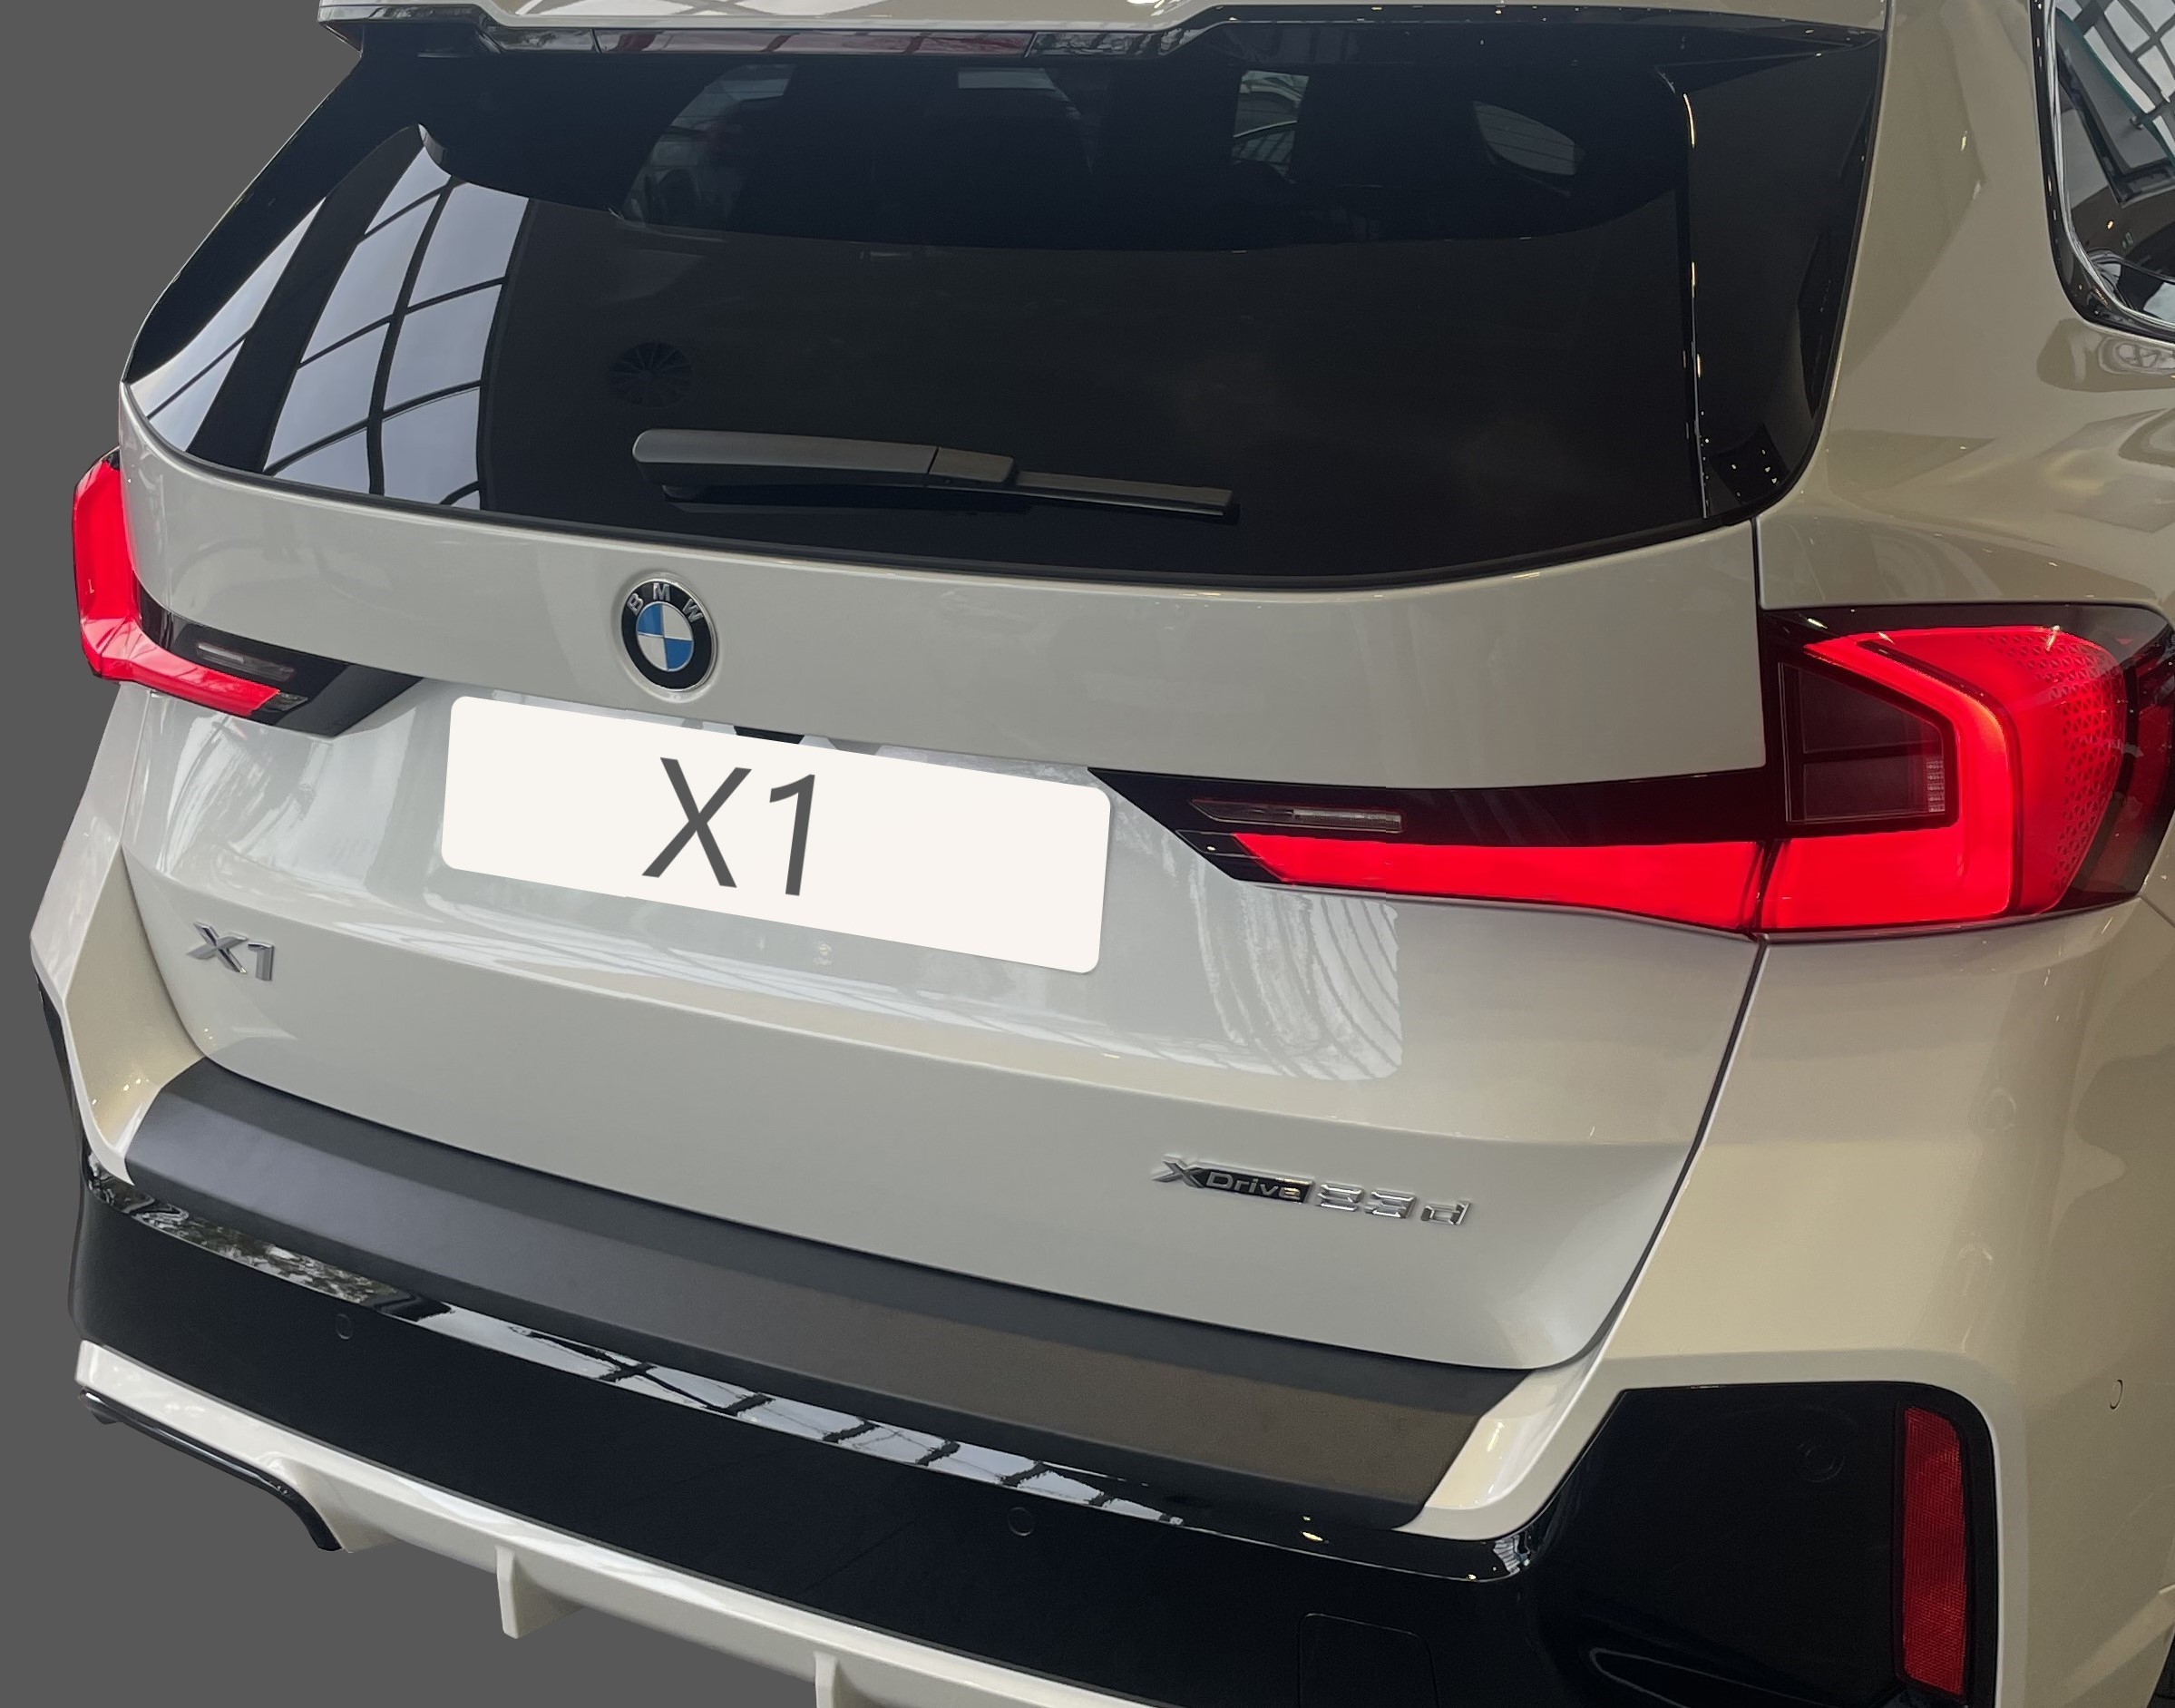  Car shades BMW X1 iX1 U11